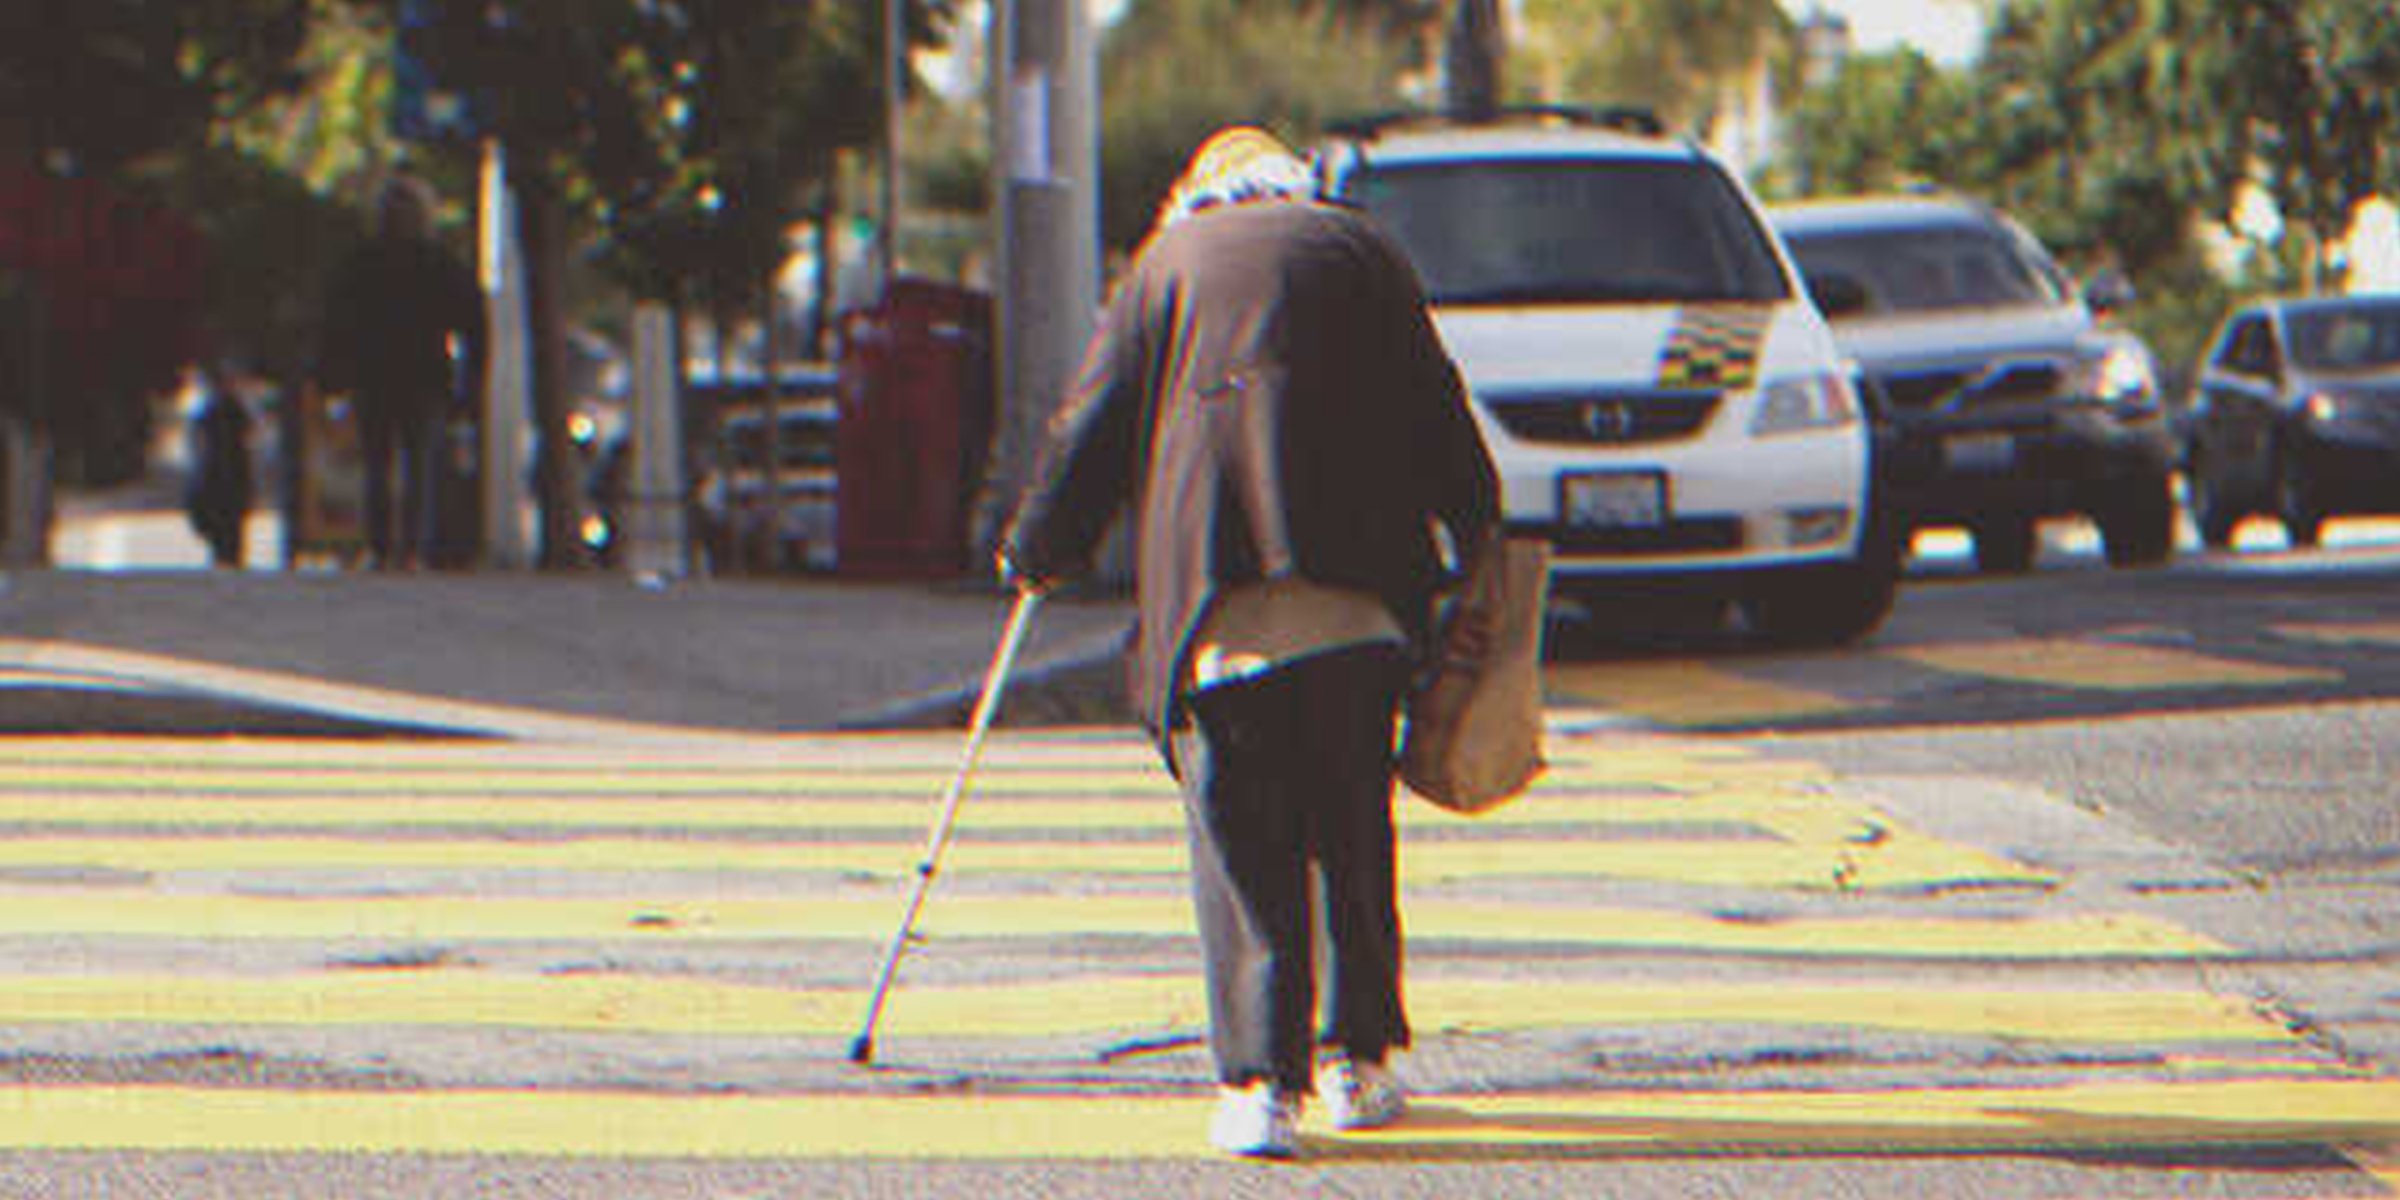 Rentner überquert die Straße | Quelle: Getty Images